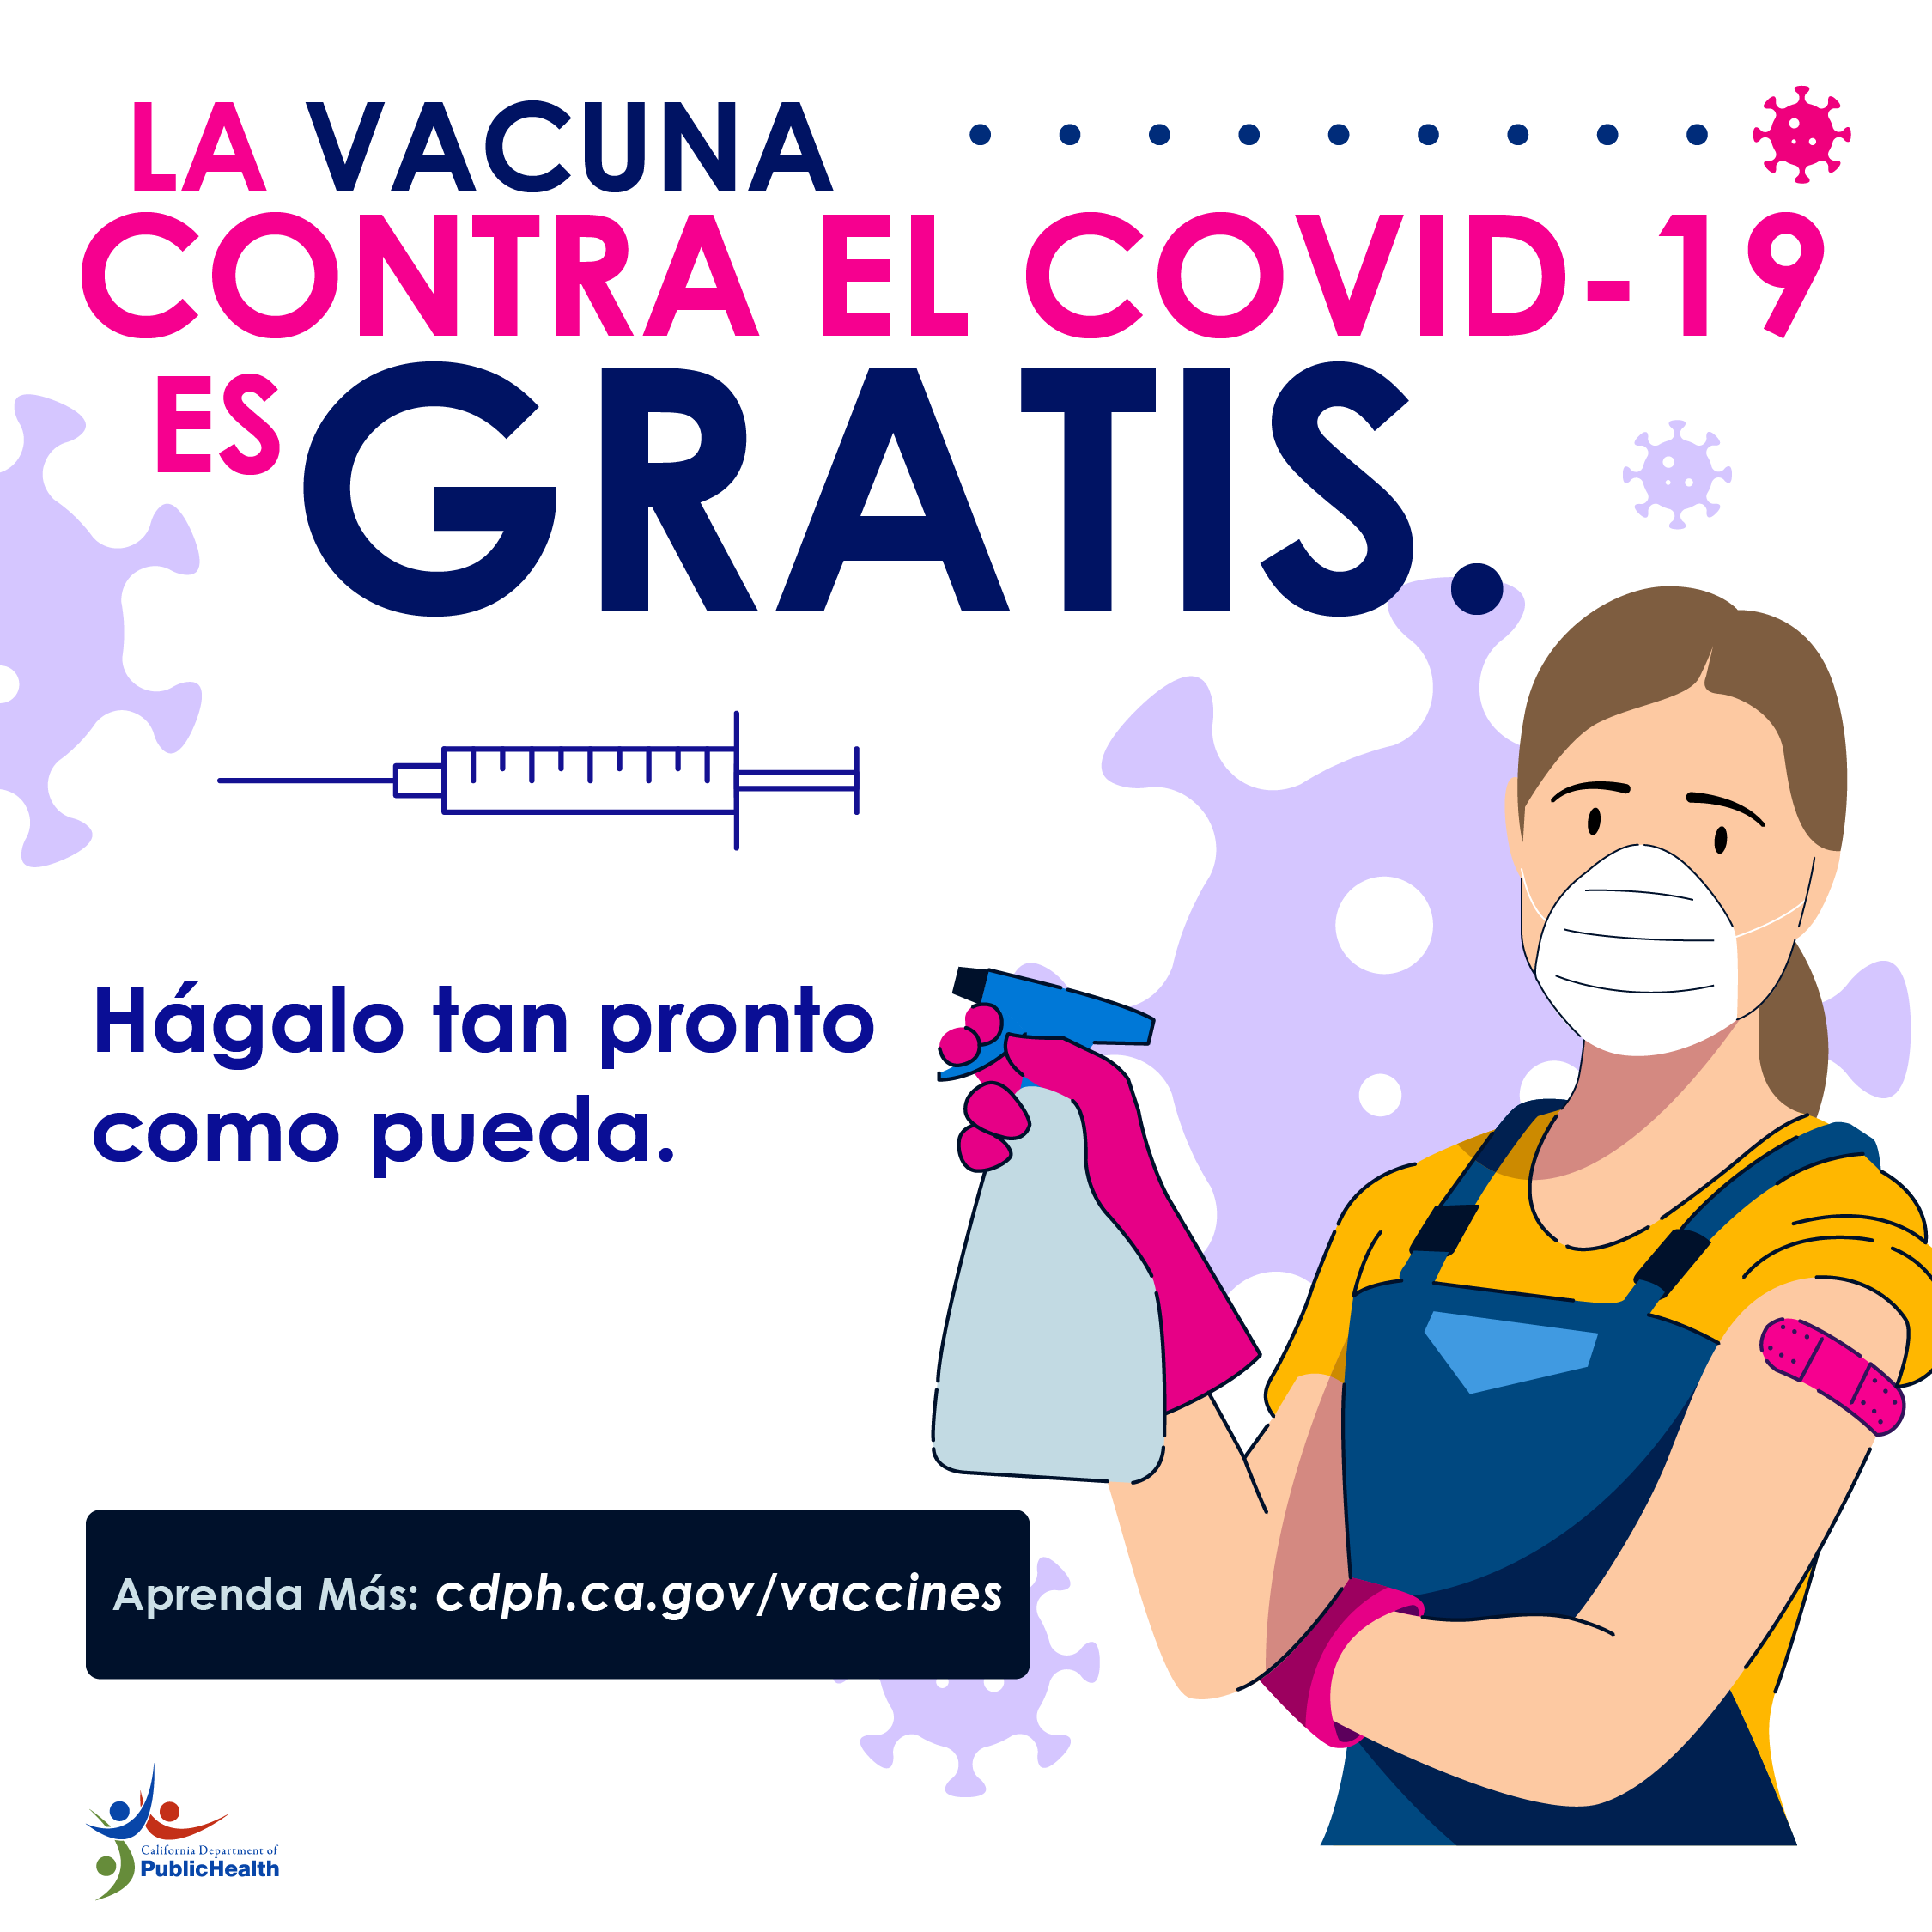 Trabajadora con vendaje en su brazo. Texto: La vacuna contra el COVID-19 es gratis. Entérese cuándo es su turno de vacunarse y hágalo tan pronto como pueda.